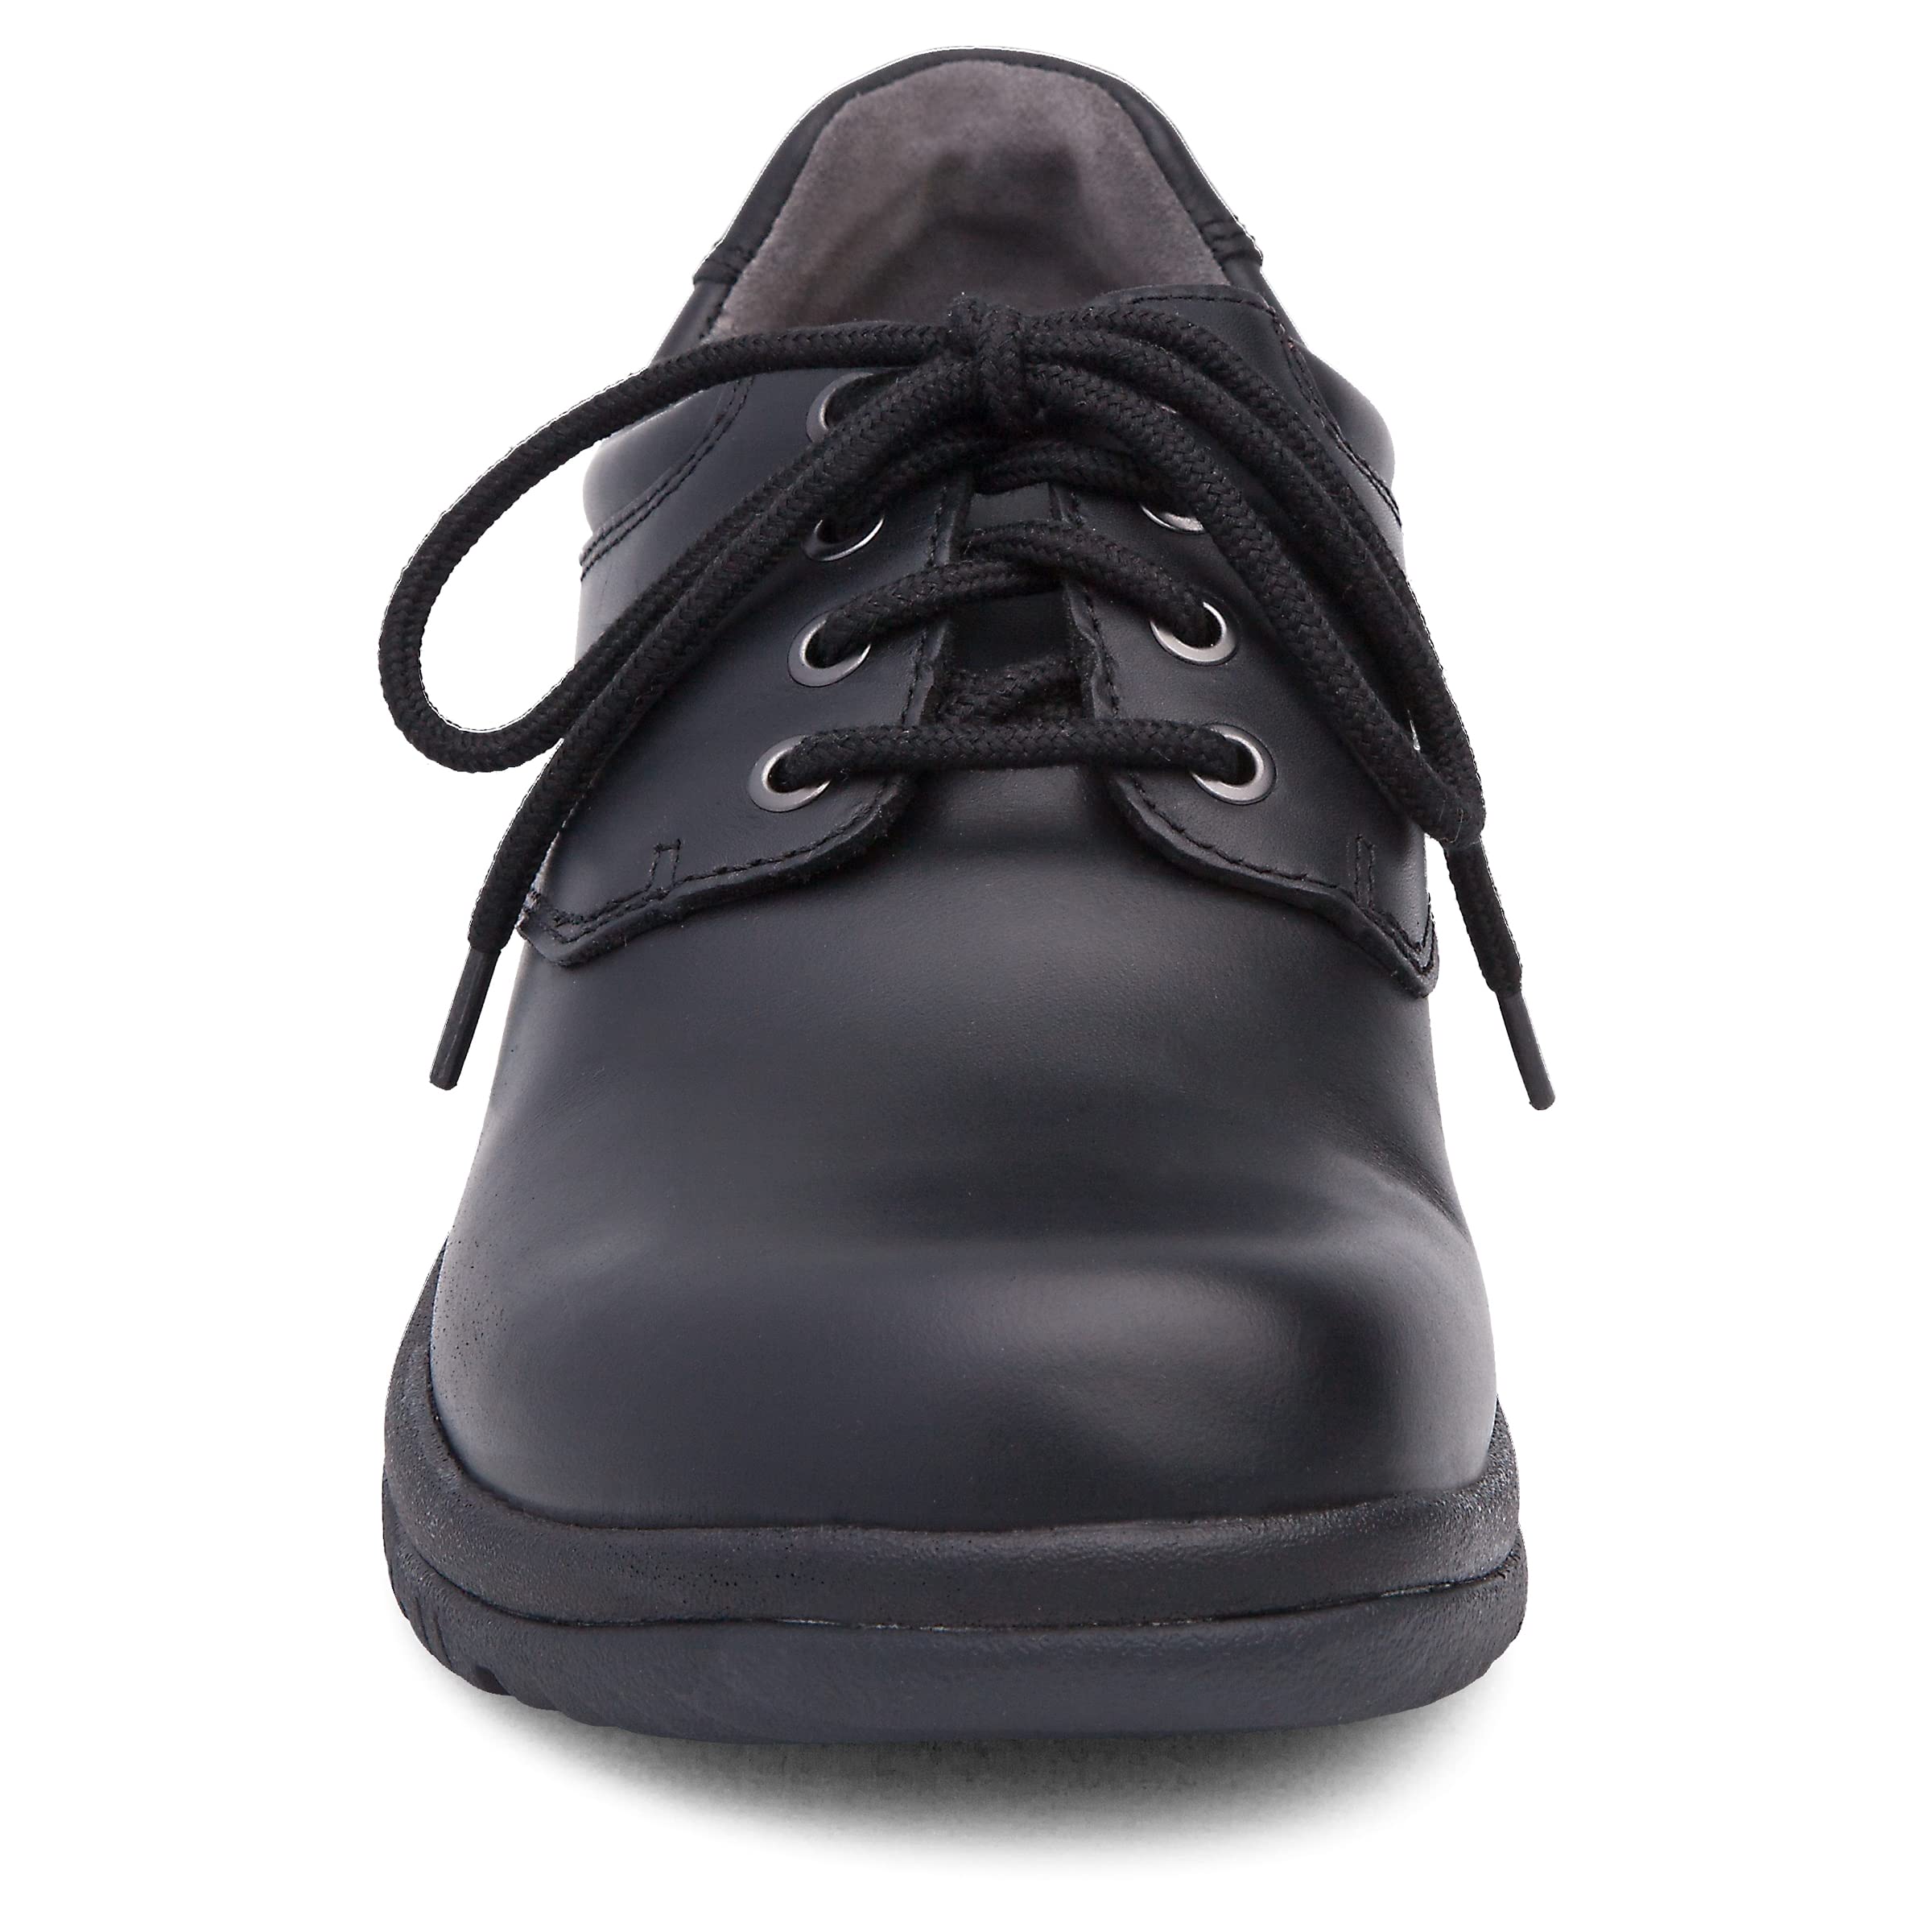 Dansko Men's Walker Dress Casual Shoes